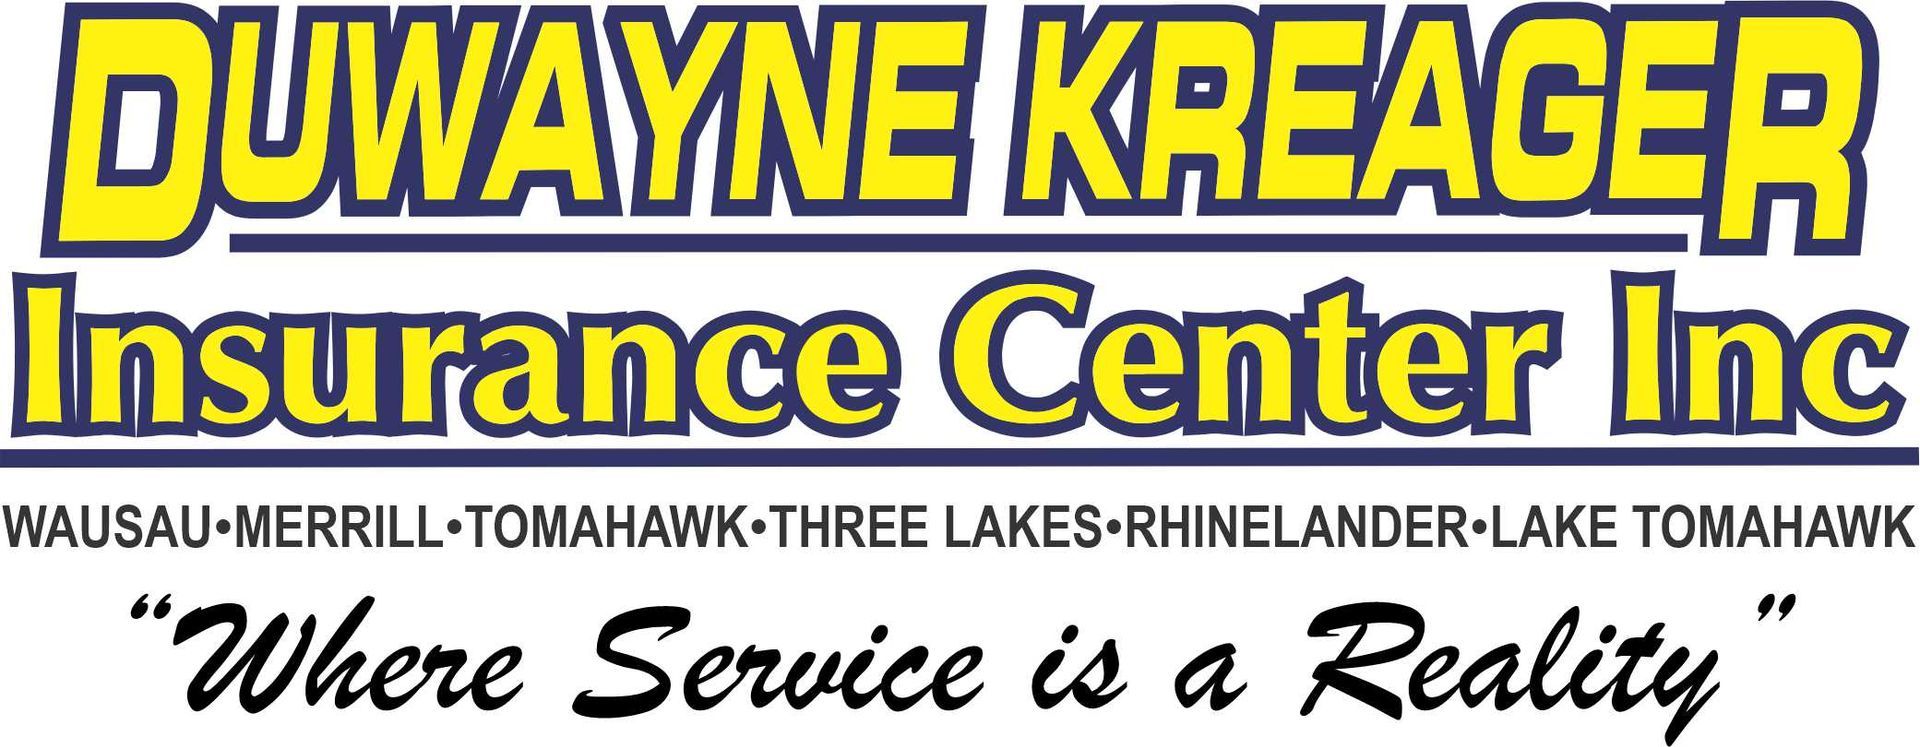 DuWayne Kreager Insurance Center - Logo